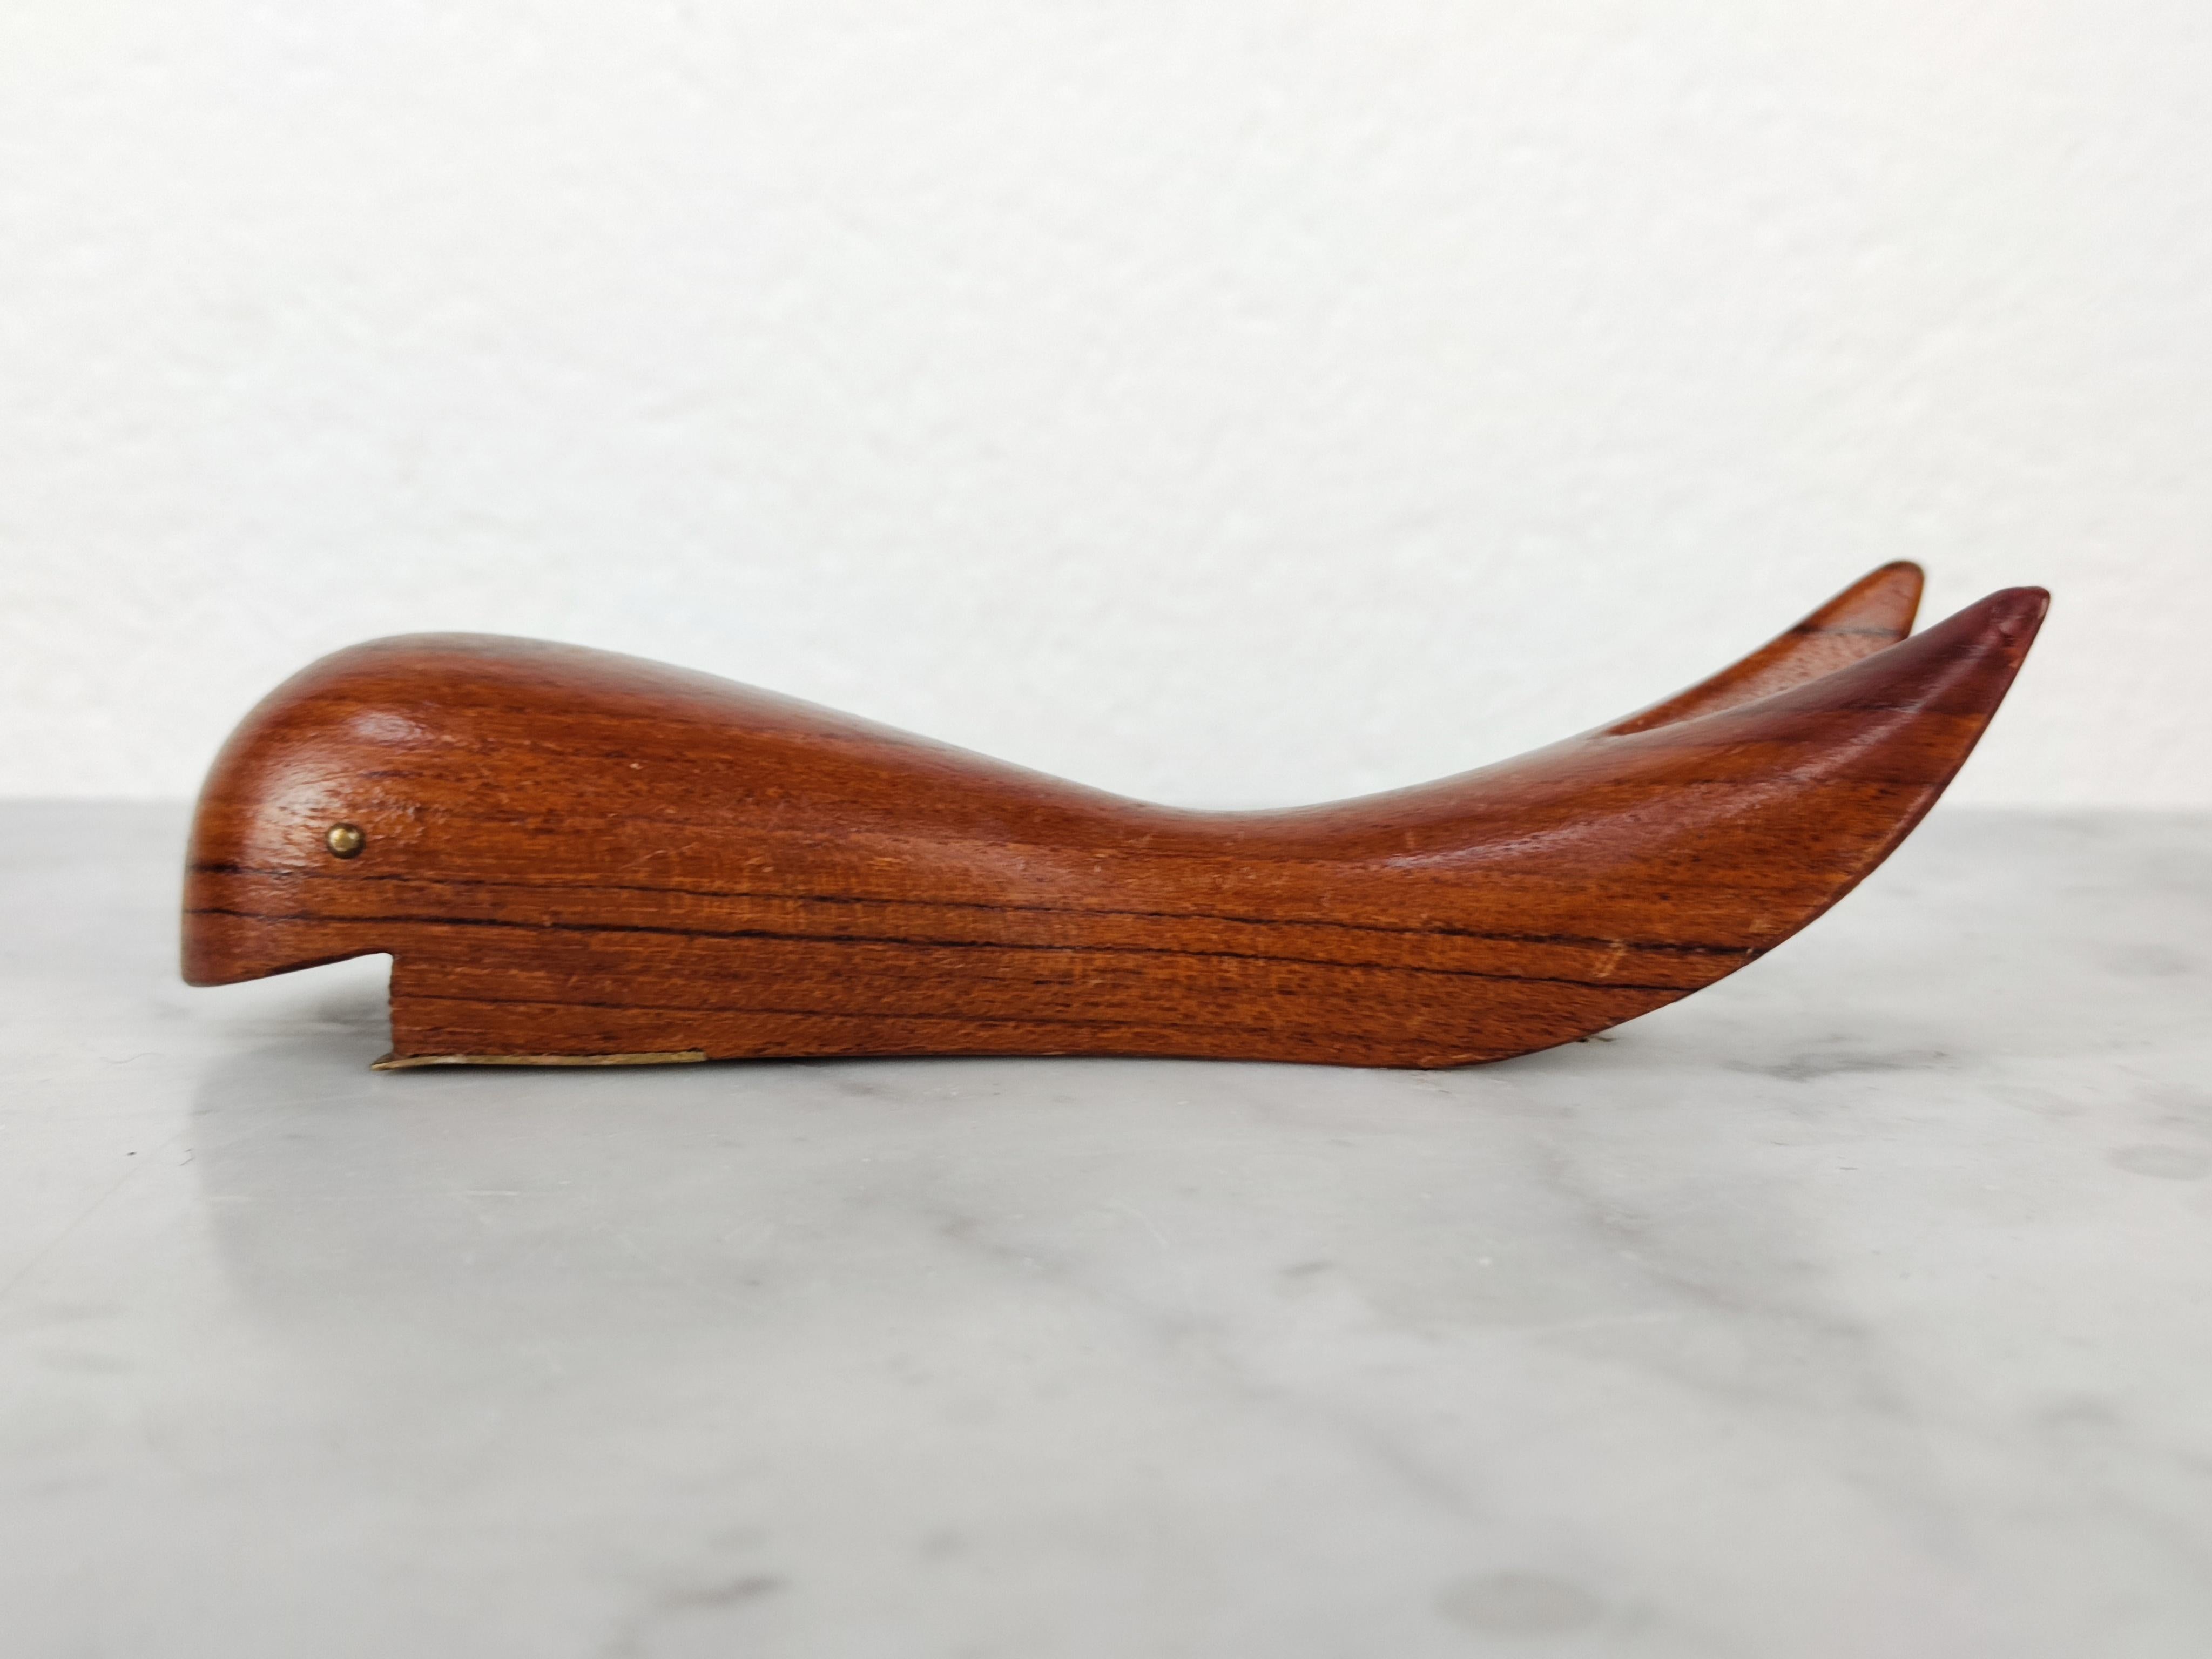 Mid Century Modern Danish Teak Wood Bottle Opener Shaped as Whale, Denmark 1960s For Sale 1